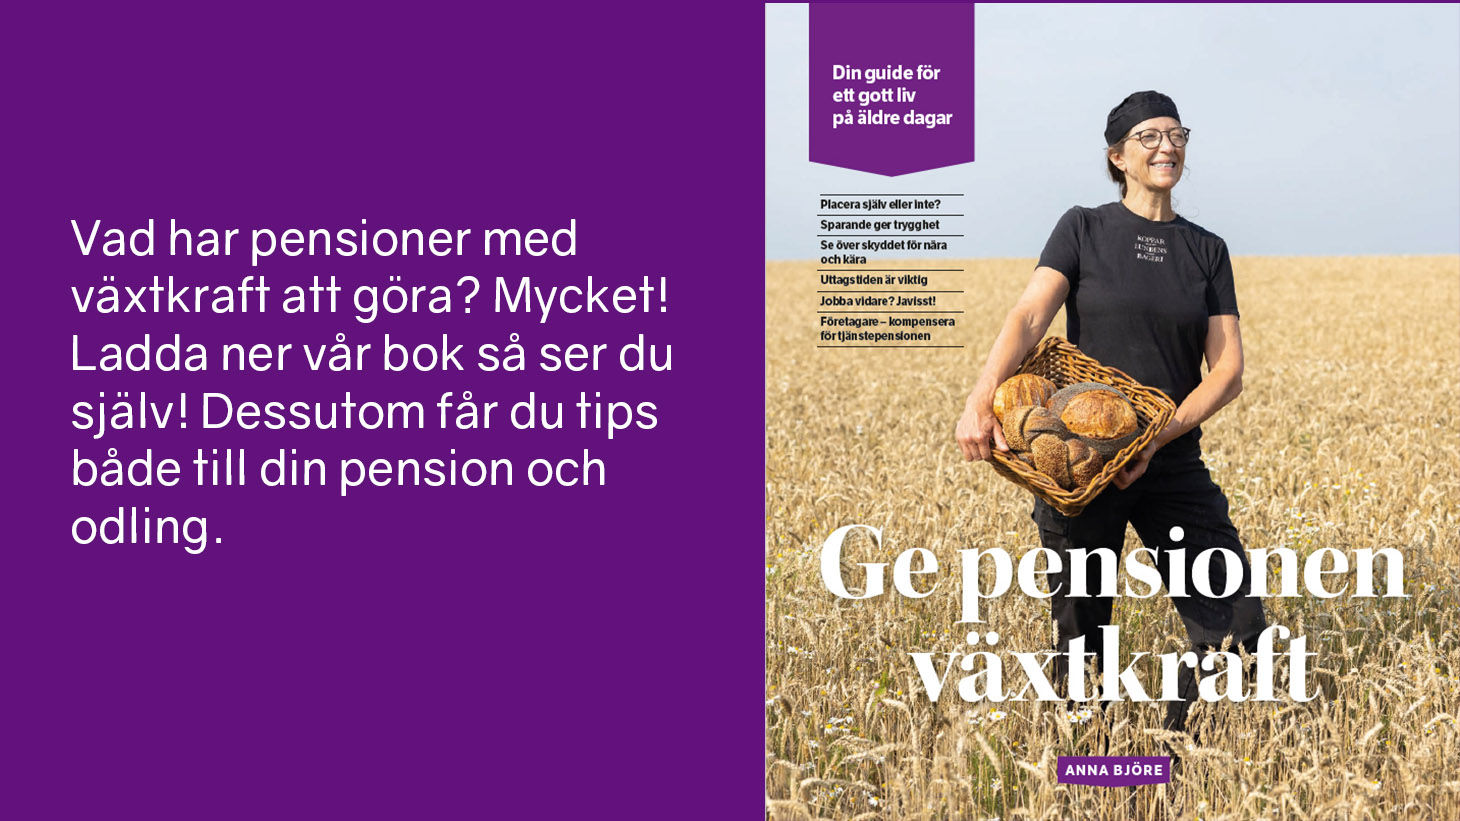 Omslag till boken "Ge pensionen växtkraft".